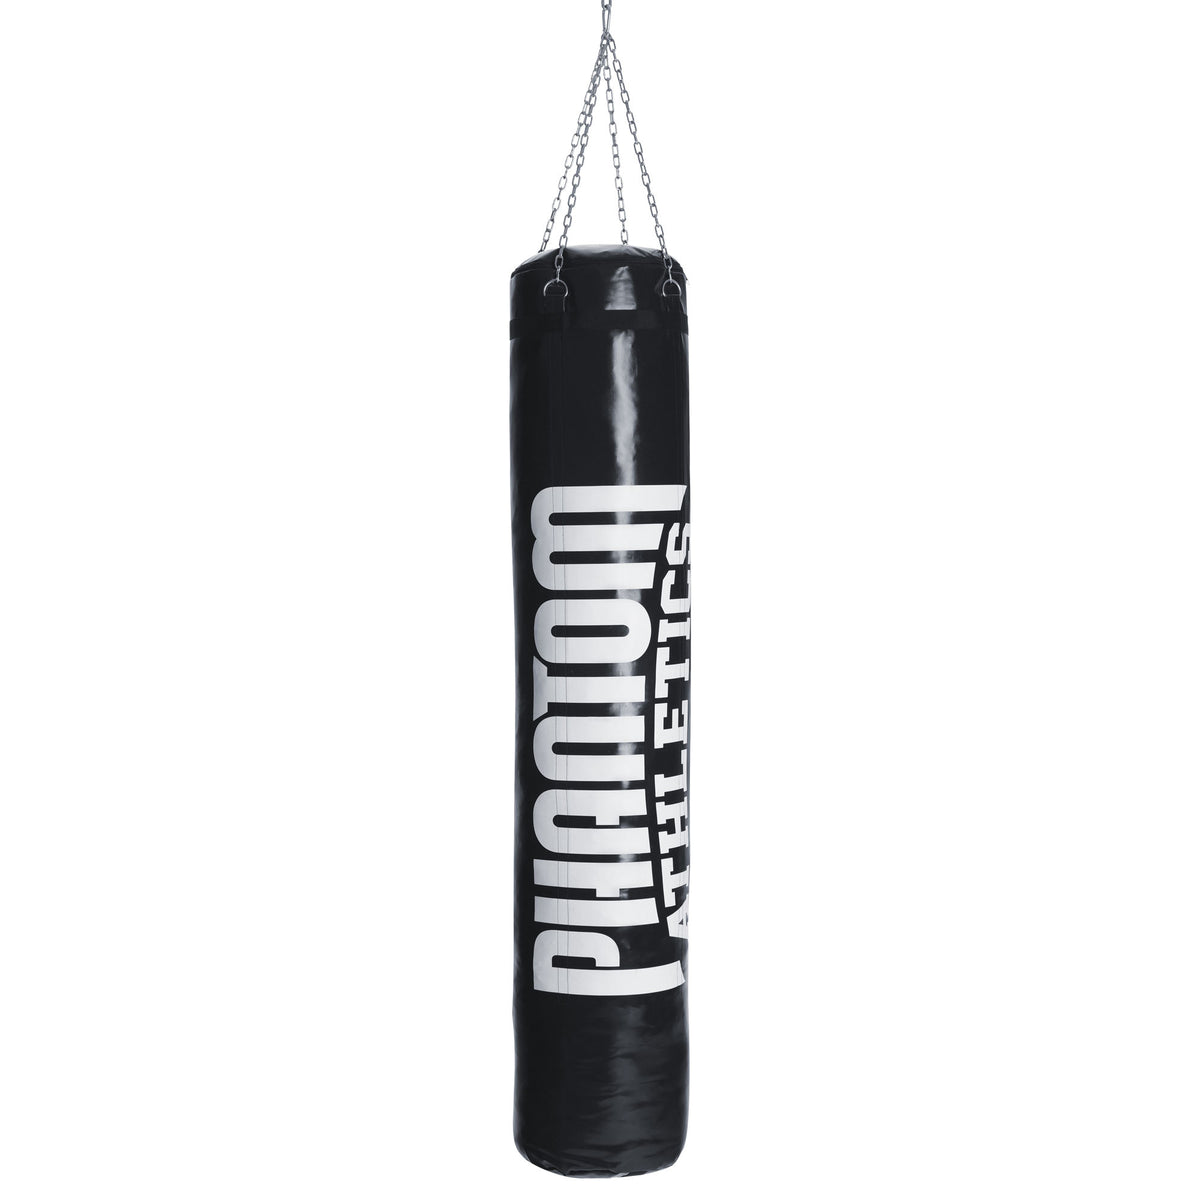 Τσάντα μποξ Phantom High Performance για πολεμικές τέχνες 180cm